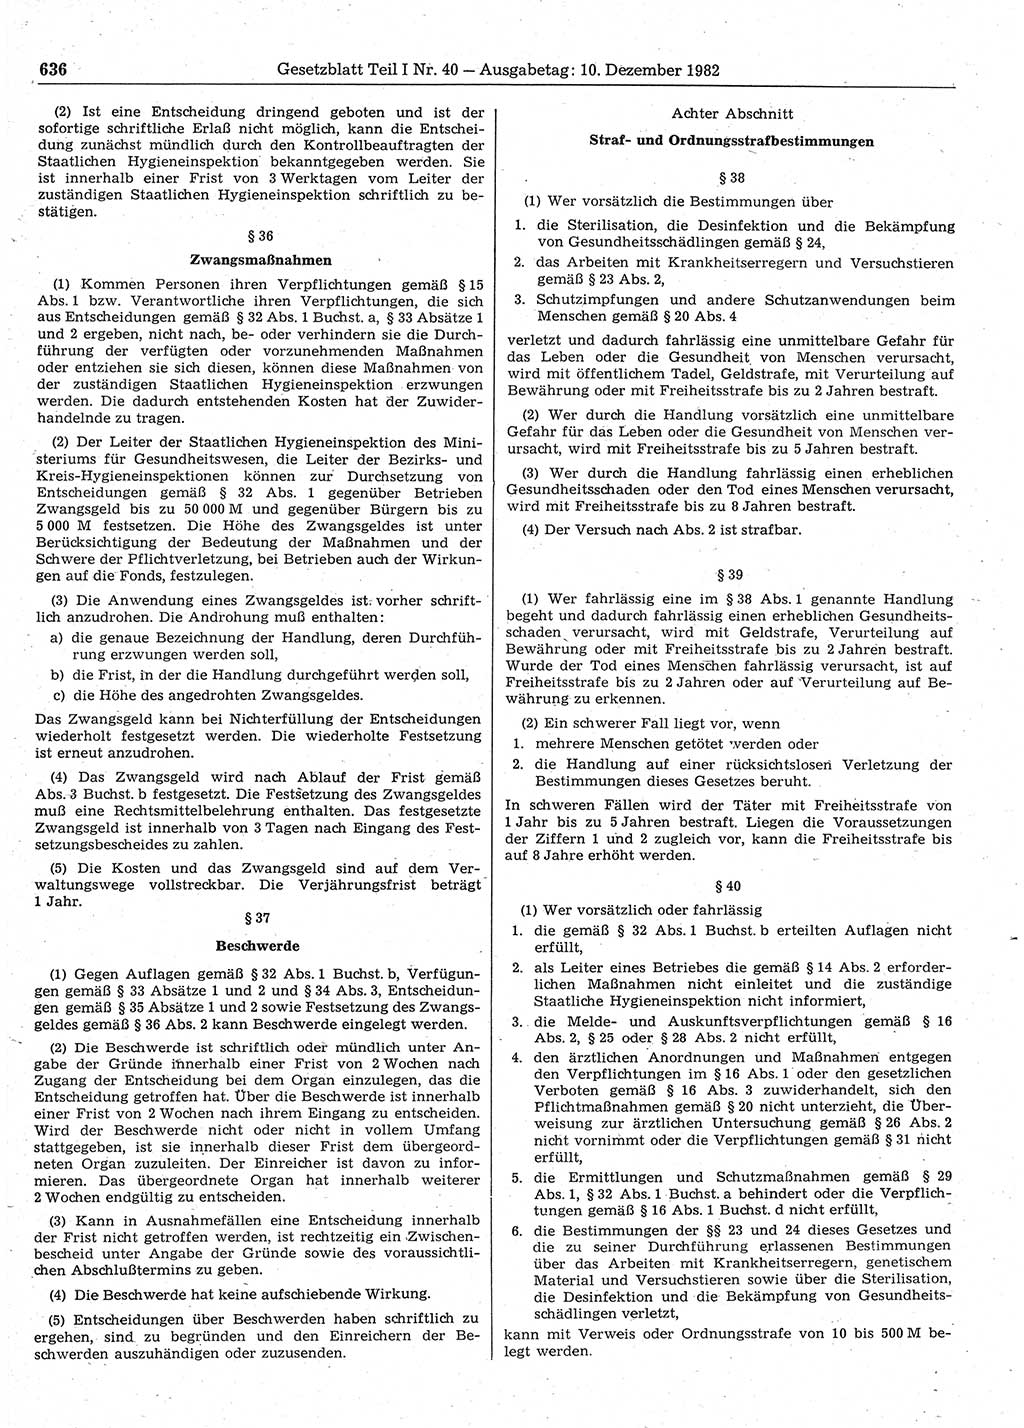 Gesetzblatt (GBl.) der Deutschen Demokratischen Republik (DDR) Teil Ⅰ 1982, Seite 636 (GBl. DDR Ⅰ 1982, S. 636)